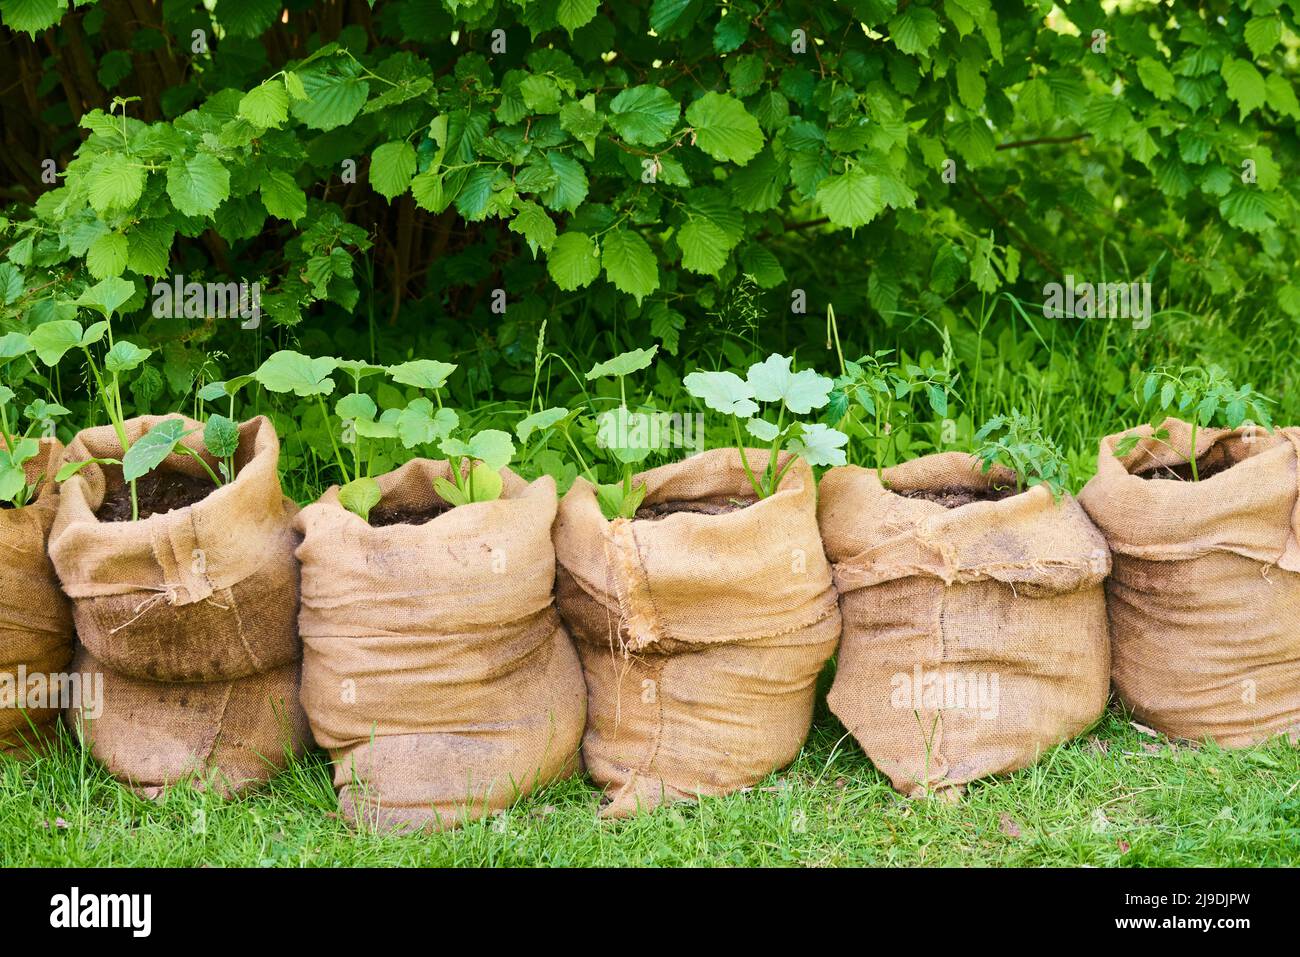 La culture de plantules de citrouille et de tomate dans des sacs de jute remplis de terre compostée dans le jardin. Banque D'Images